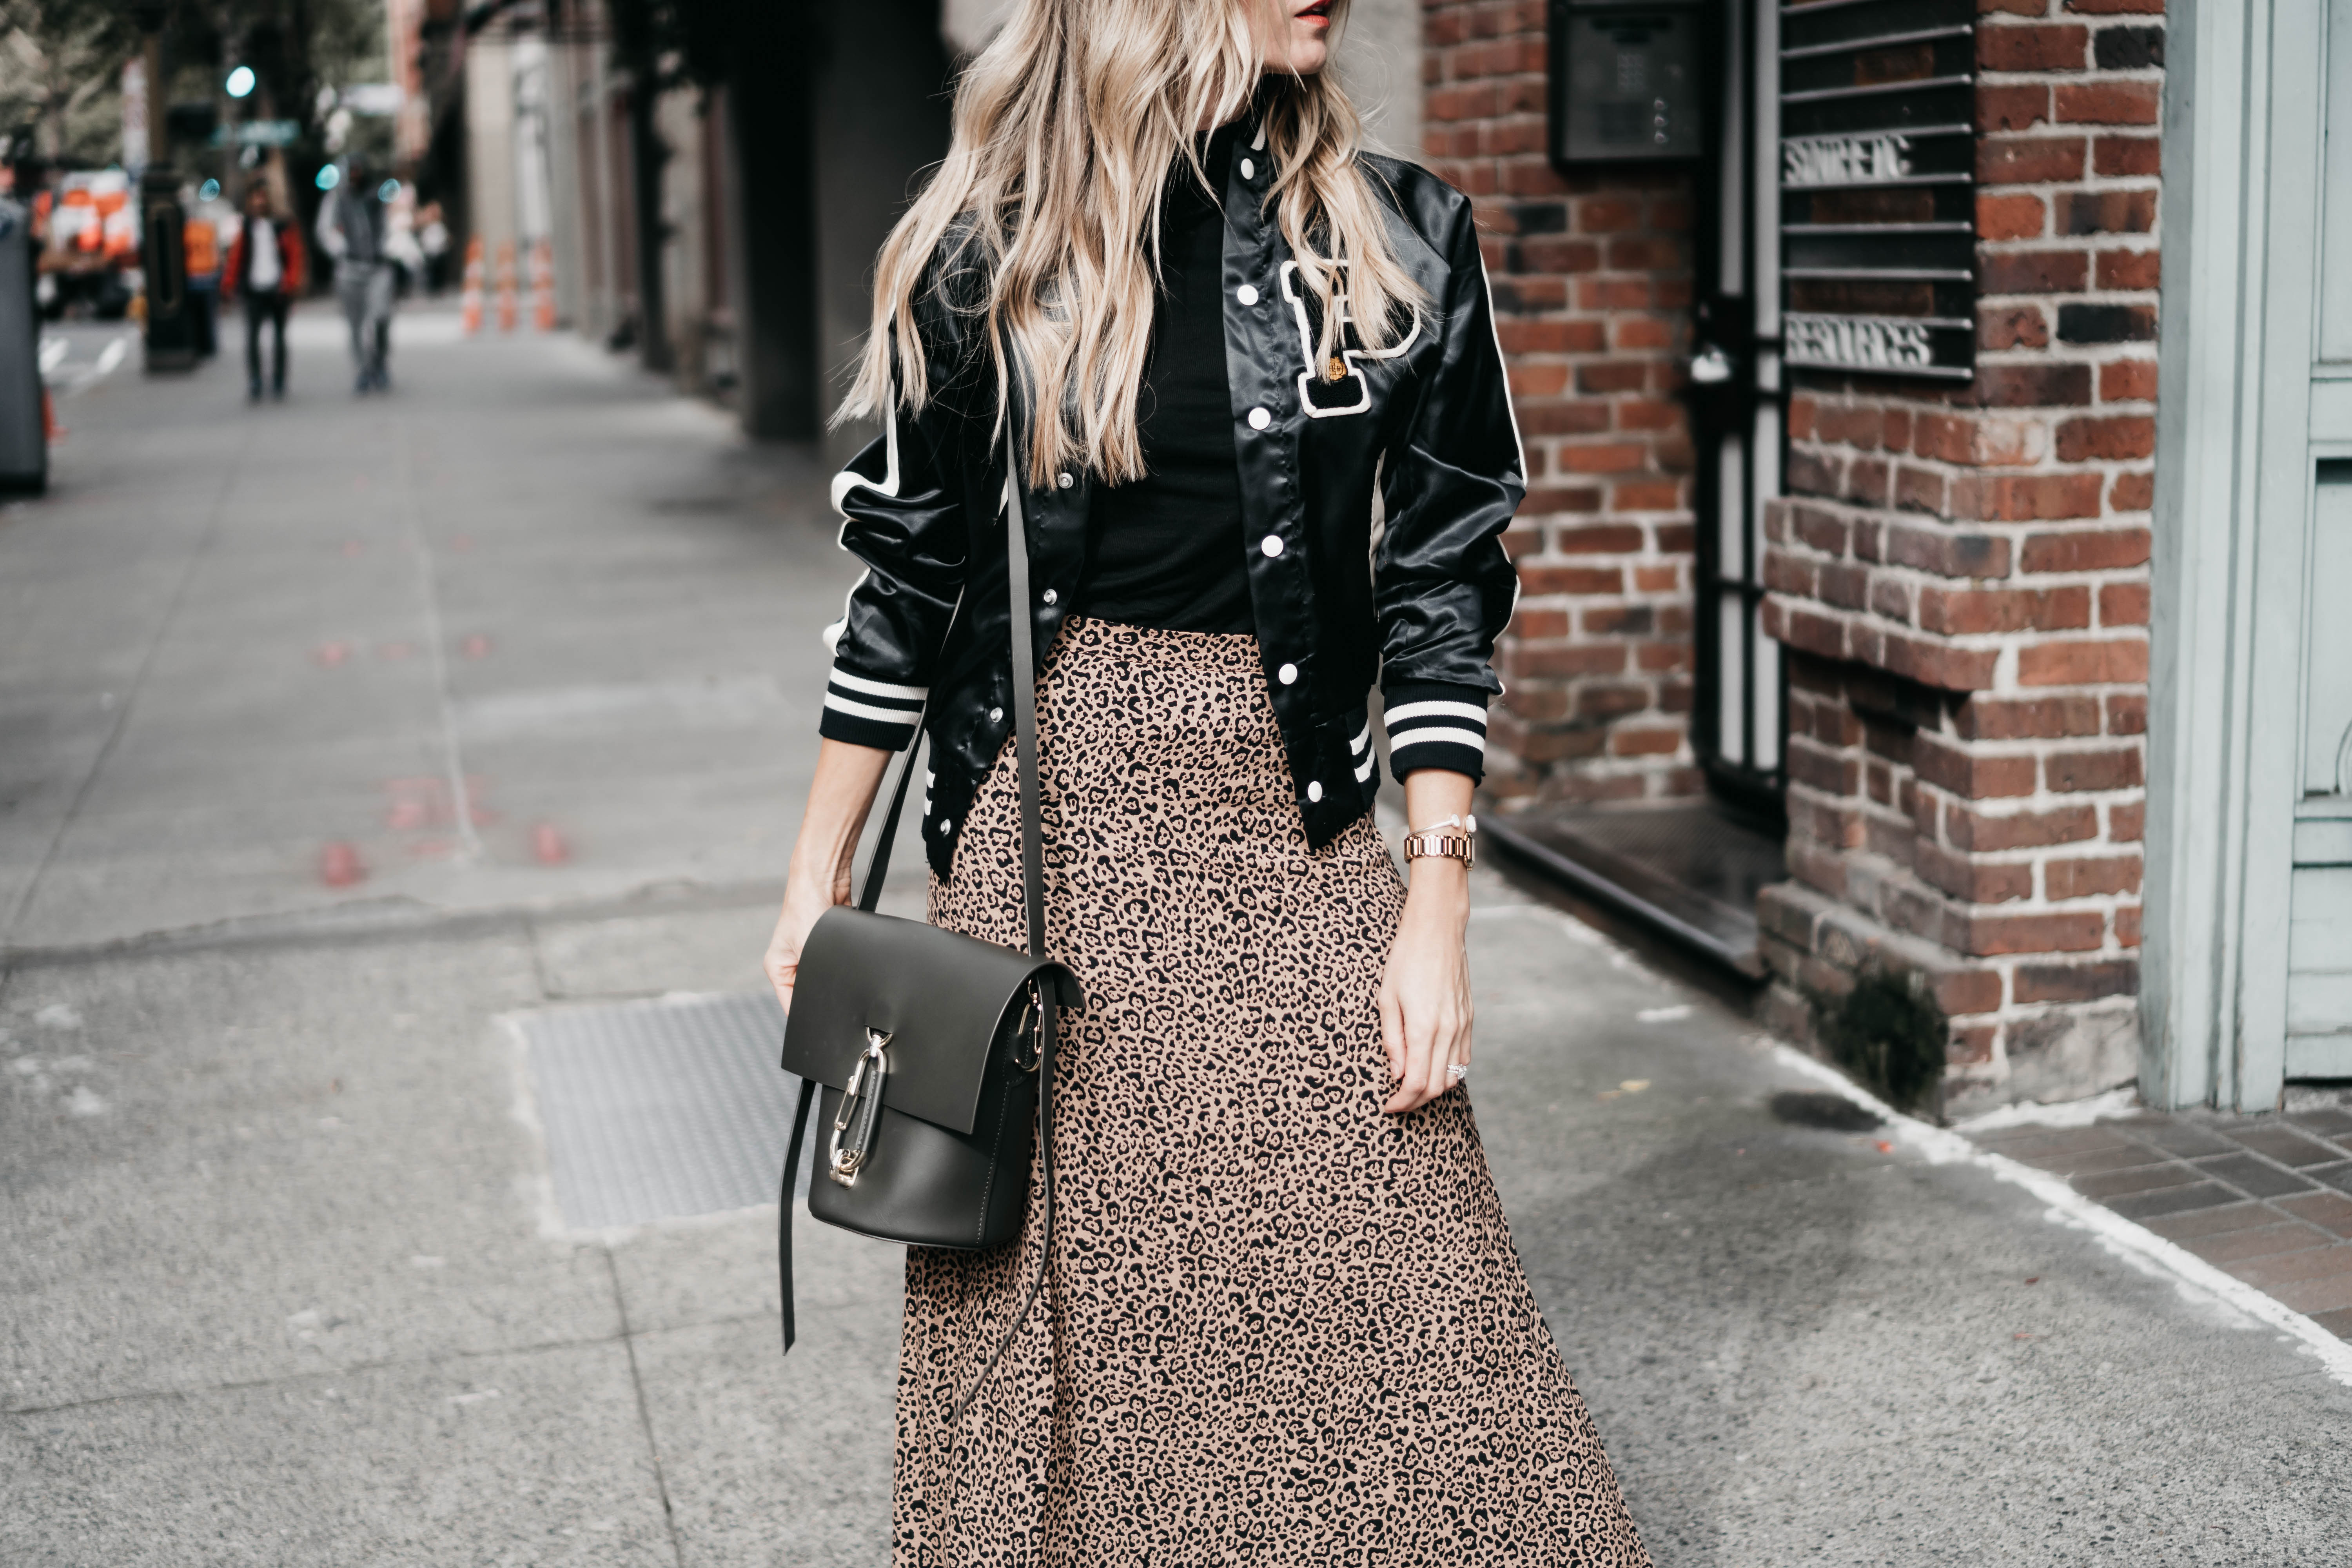 The Grey Edit-Reformation Leopard Skirt-Vintage Varsity Jacket-Zac Zac Posen-PVC Mules